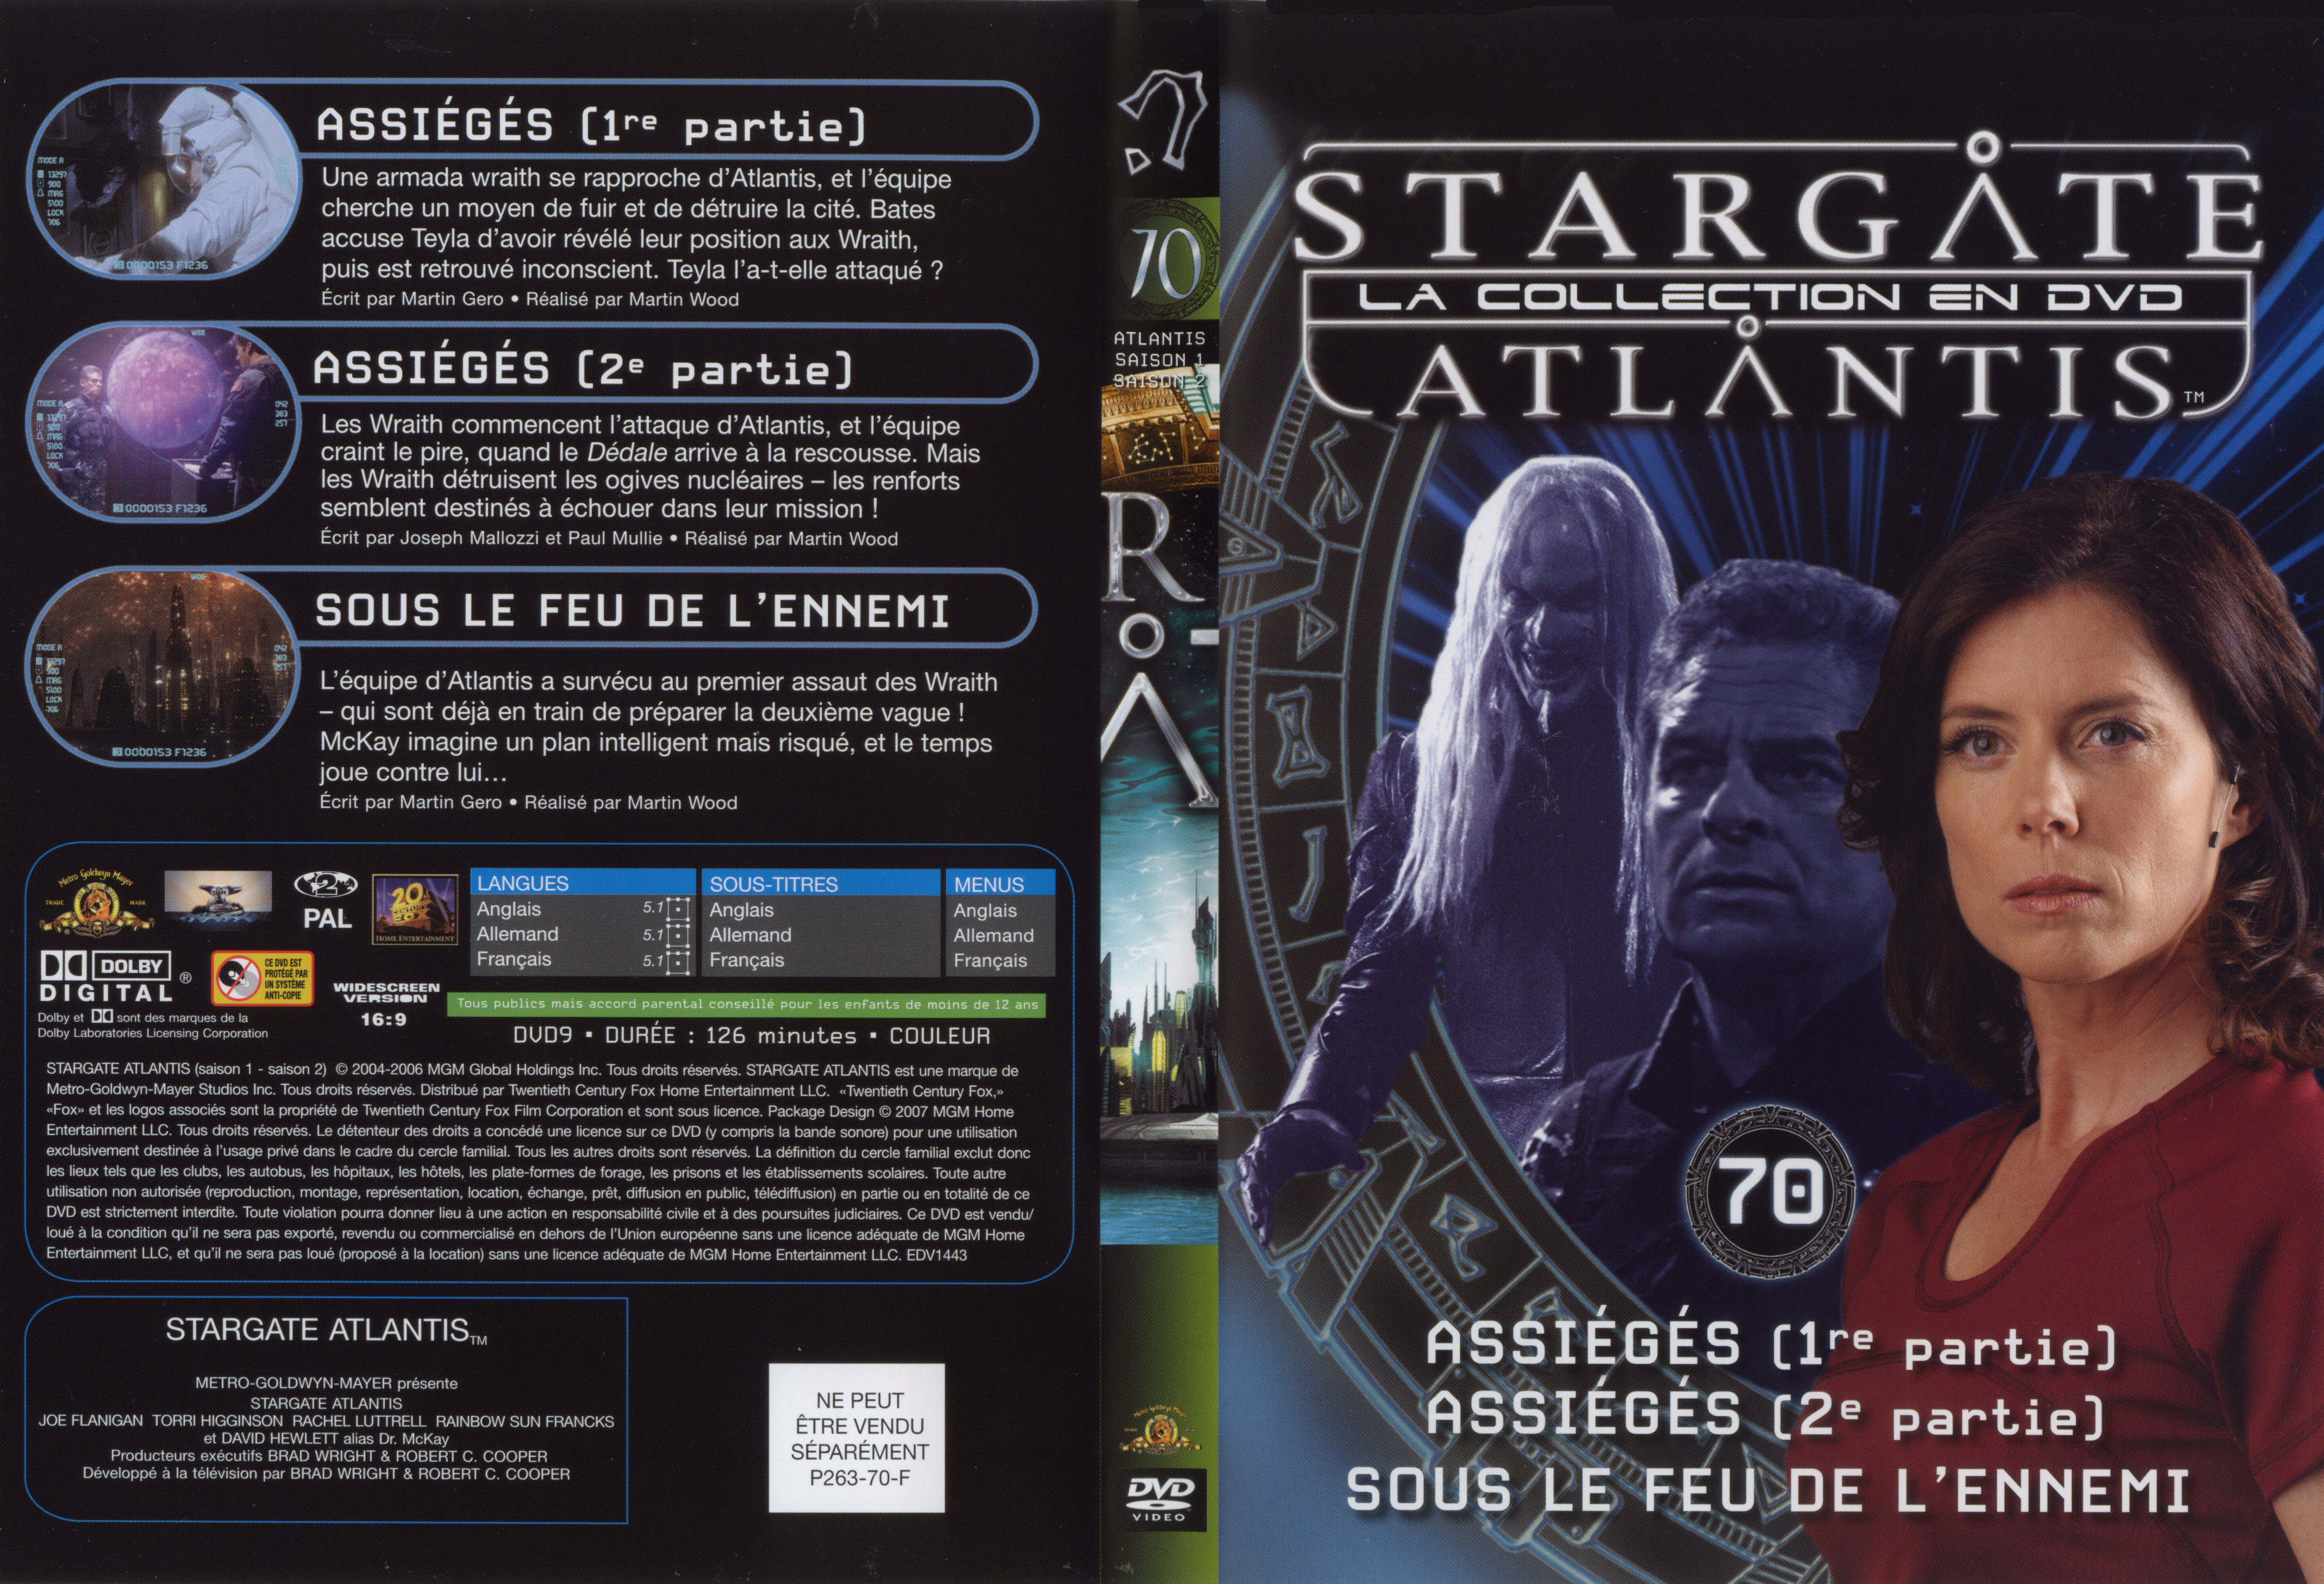 Jaquette DVD Stargate atlantis saison 1-2 vol 70